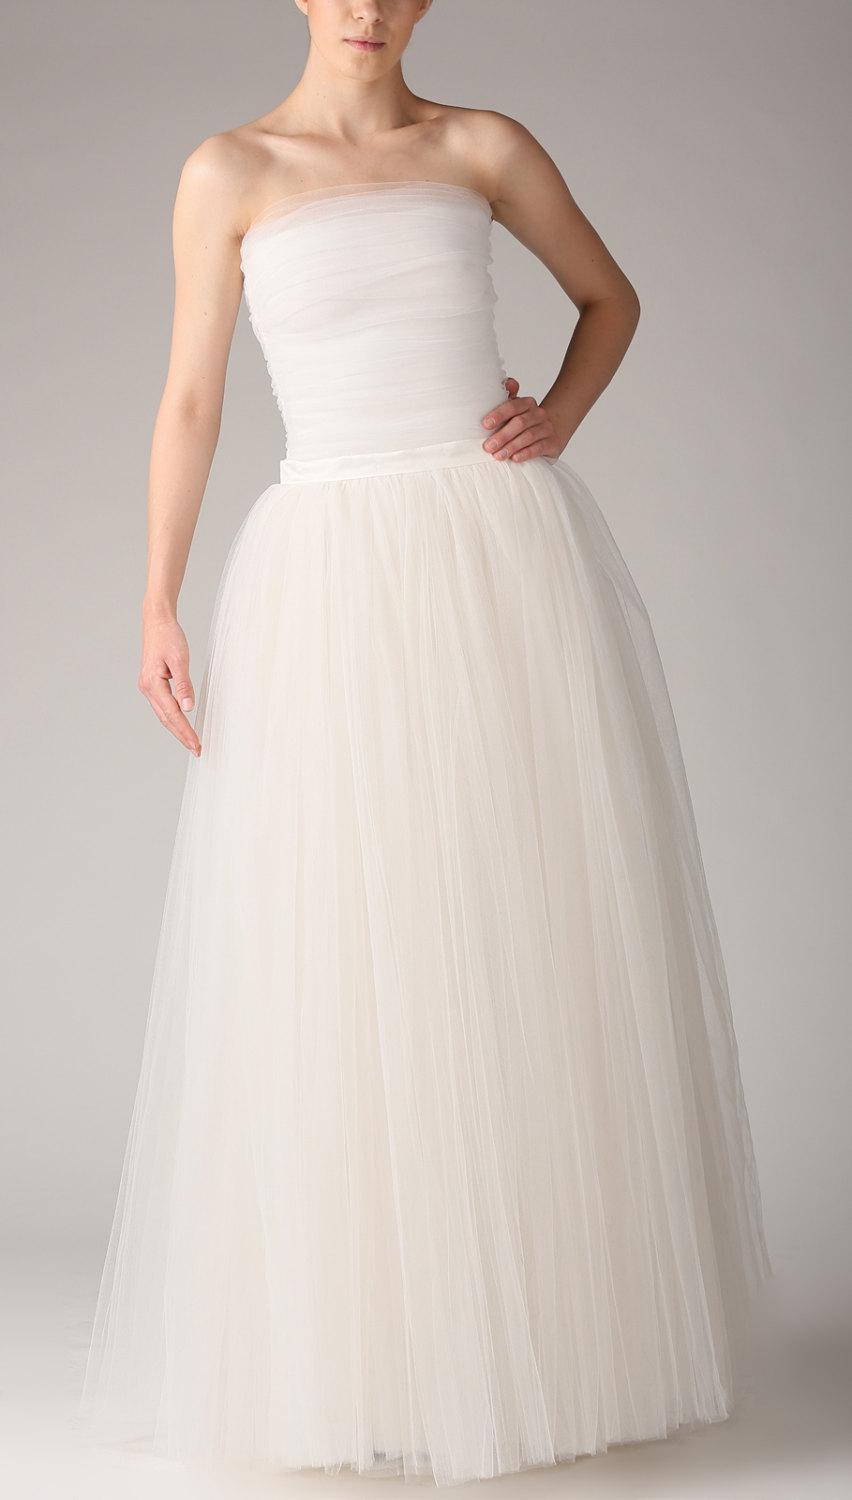 زفاف - White tulle corset,Handmade tutu corset,Wedding tulle corset,Bridal tulle corset,Wedding tulle bodice,Bridal tulle bodice,Wedding bodice